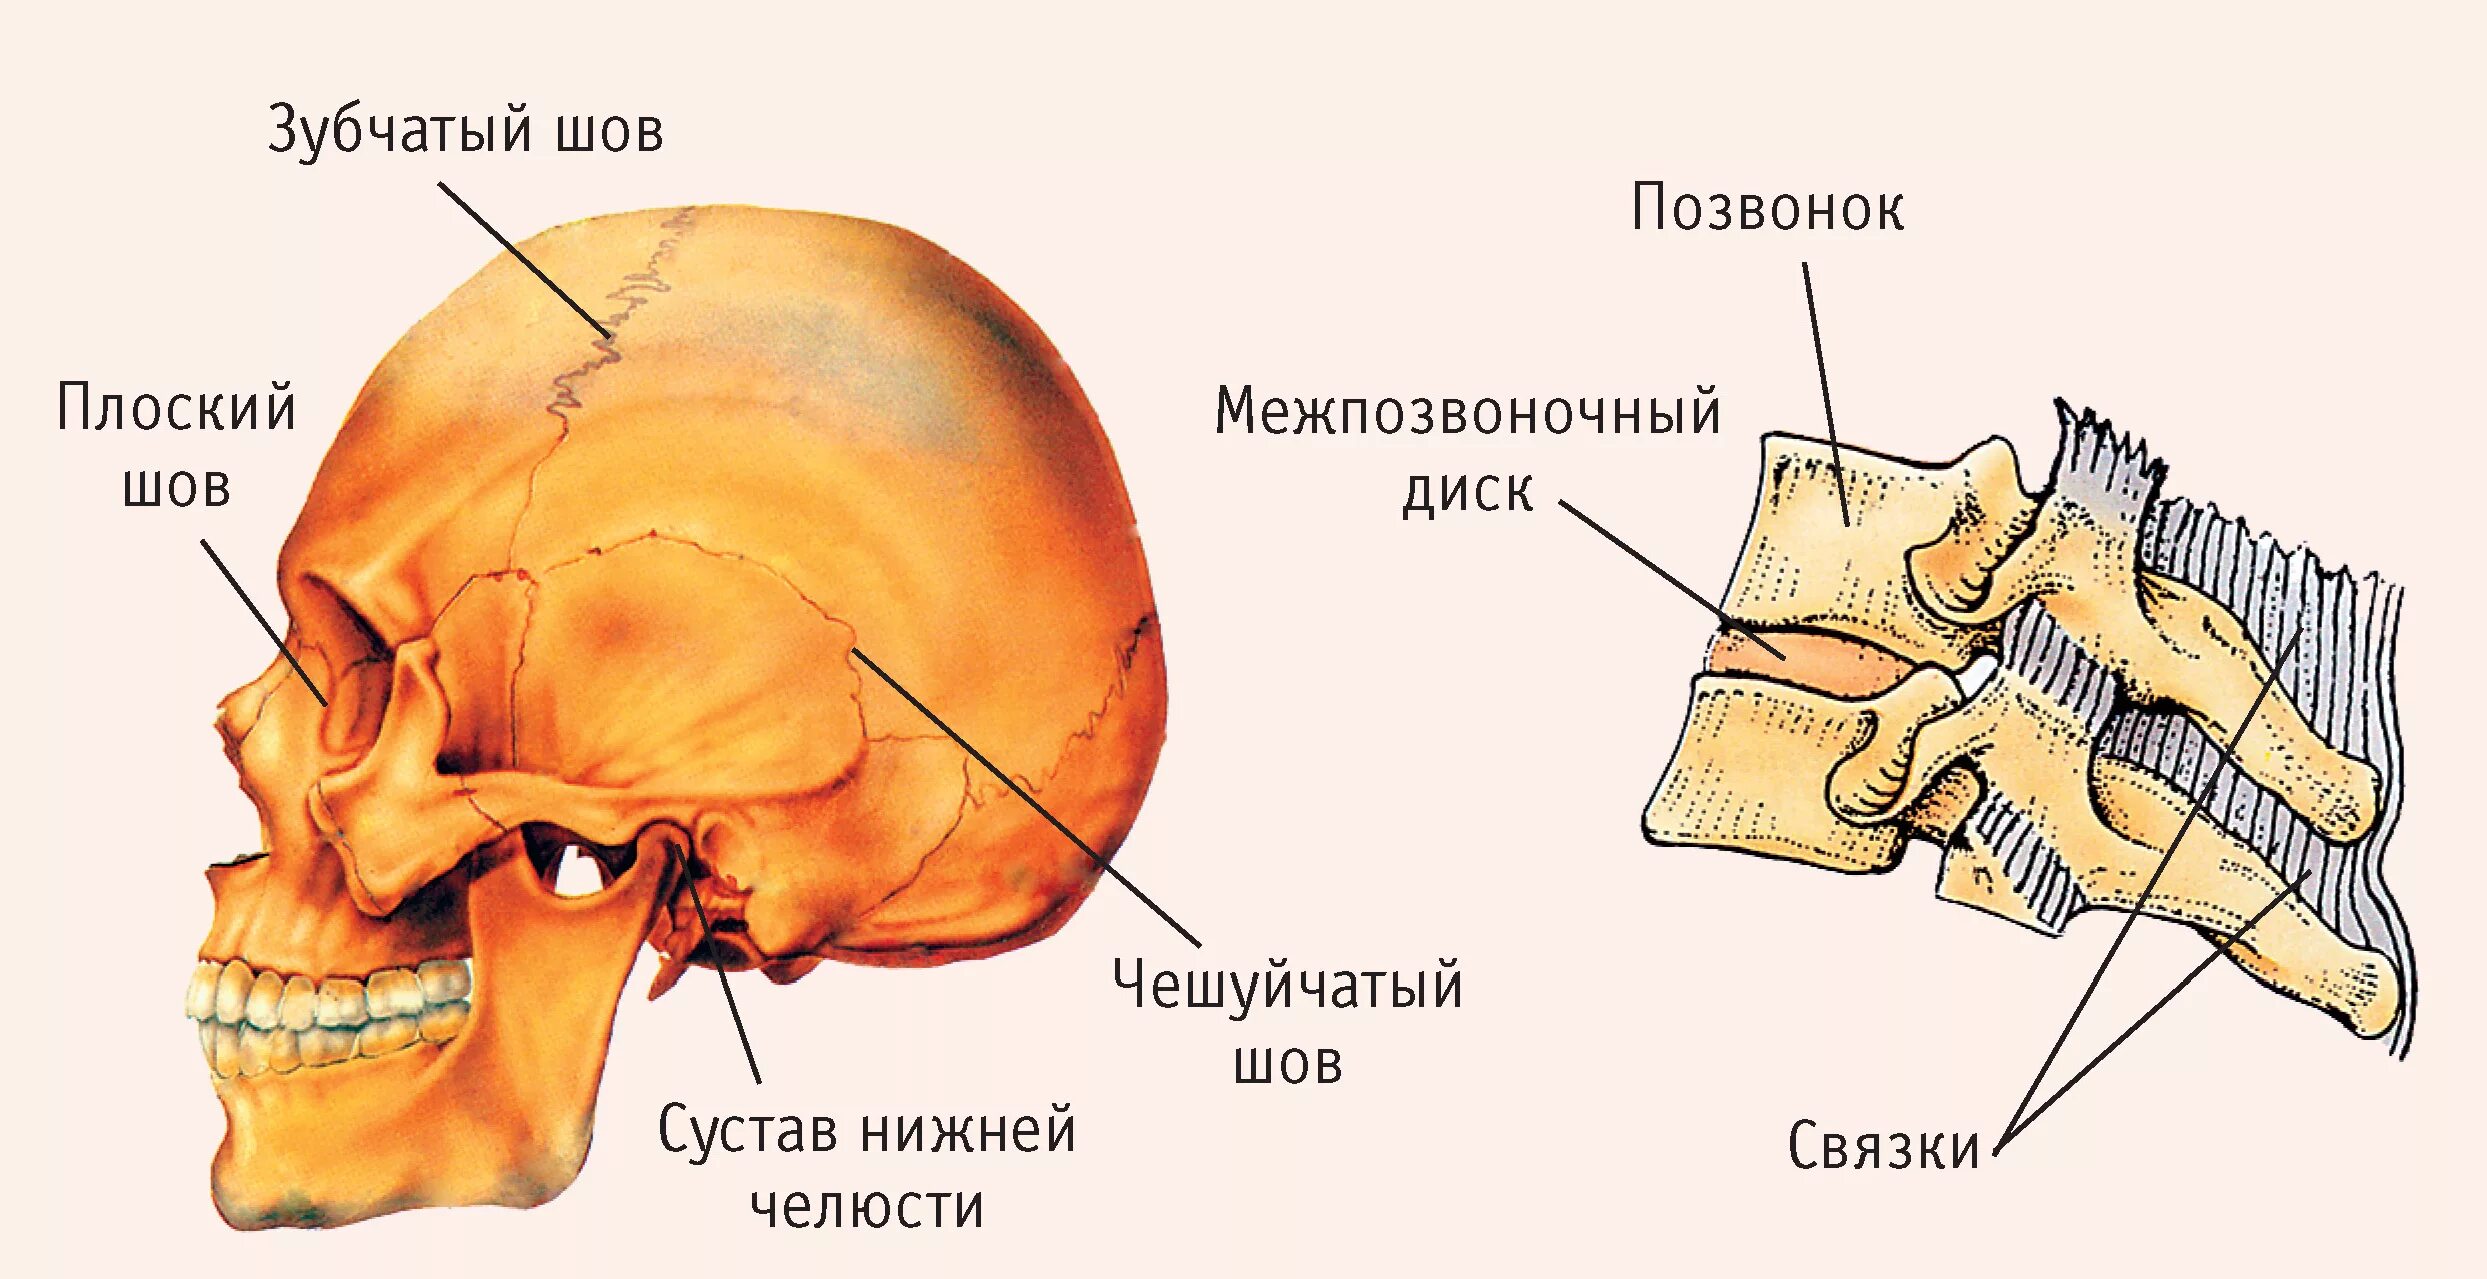 Чешуйчатый шов черепа анатомия. Швы черепа анатомия зубчатый. Строение кости швы черепа. Соединения костей черепа анатомия швы.